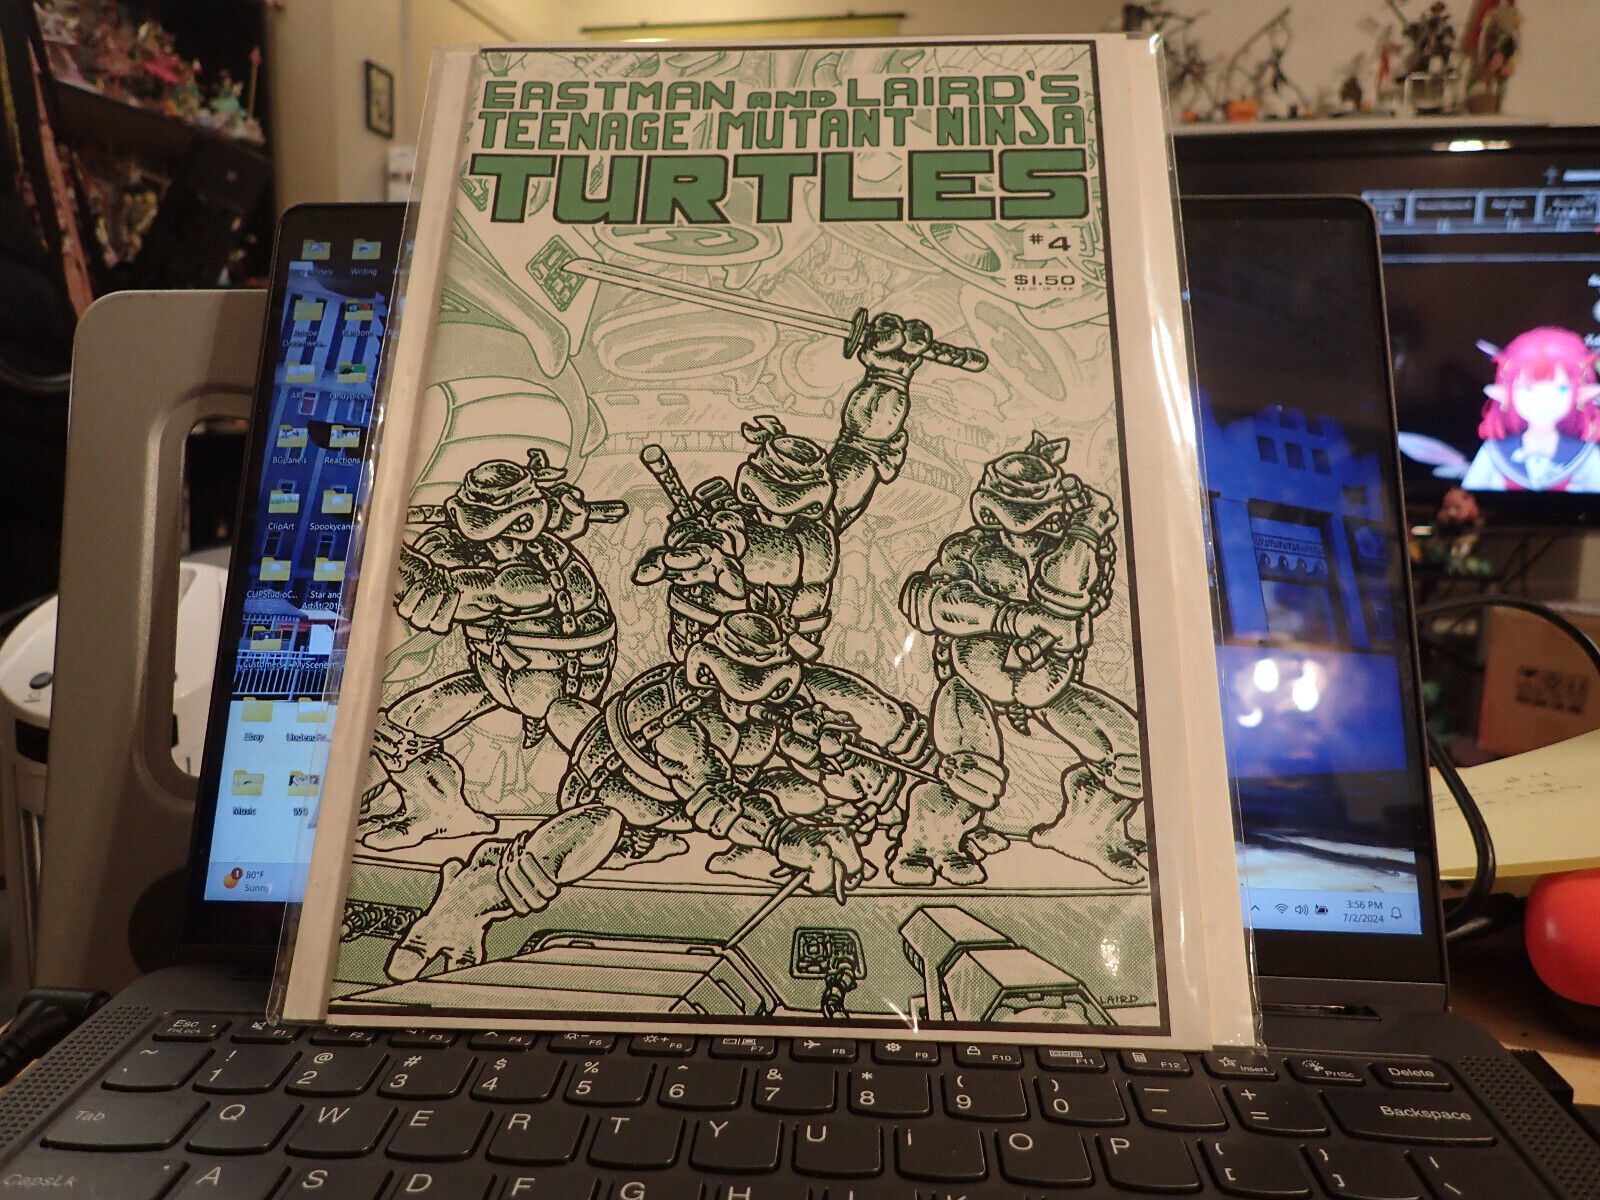 TEENAGE MUTANT NINJA TURTLES #4 1st PRINTING Mirage Studios TMNT Comic Book